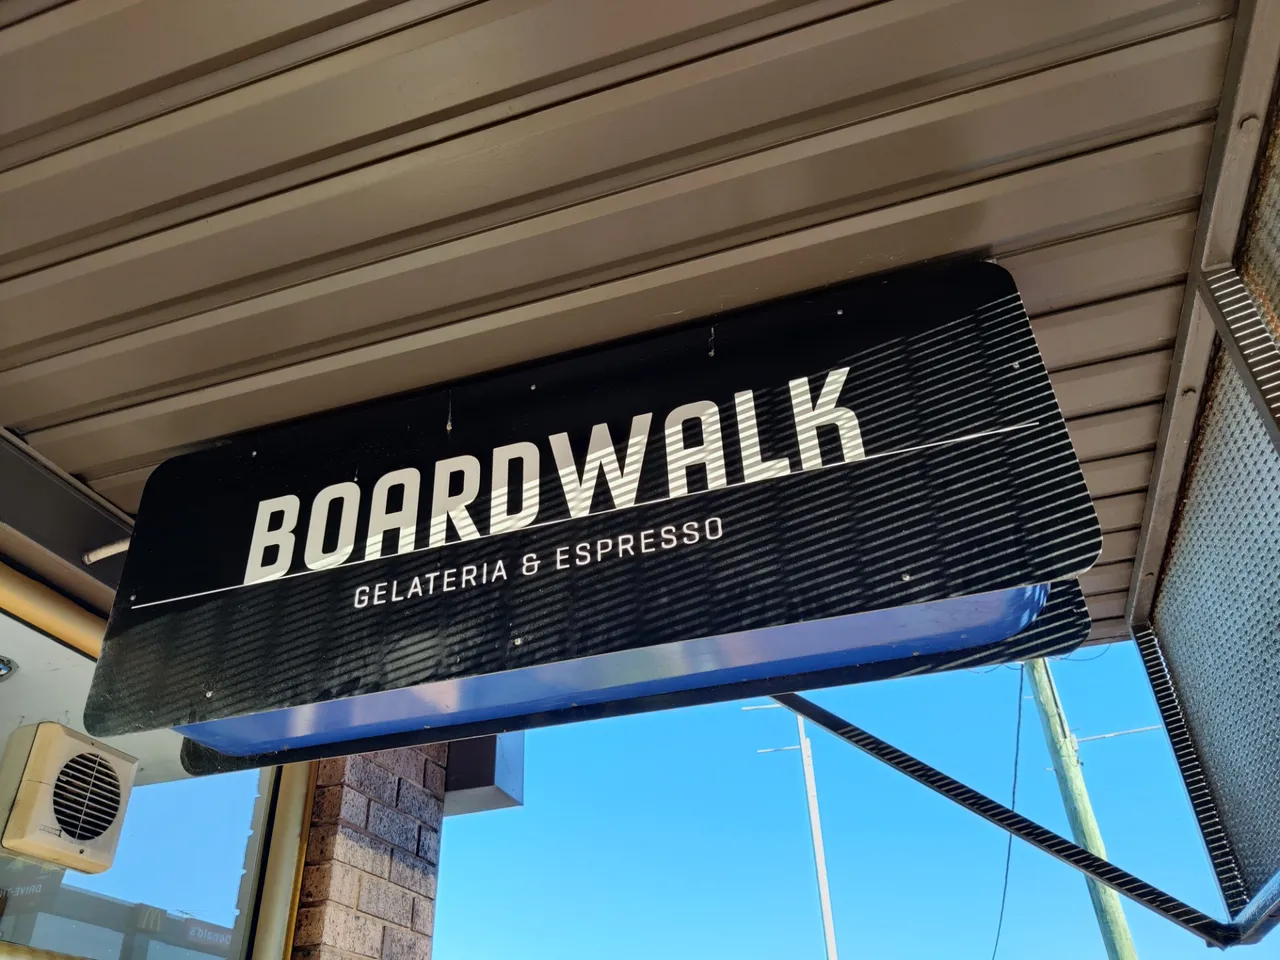 Boardwalk Gelateria And Espresso: Merimbula, AUSTRALIA.jpg